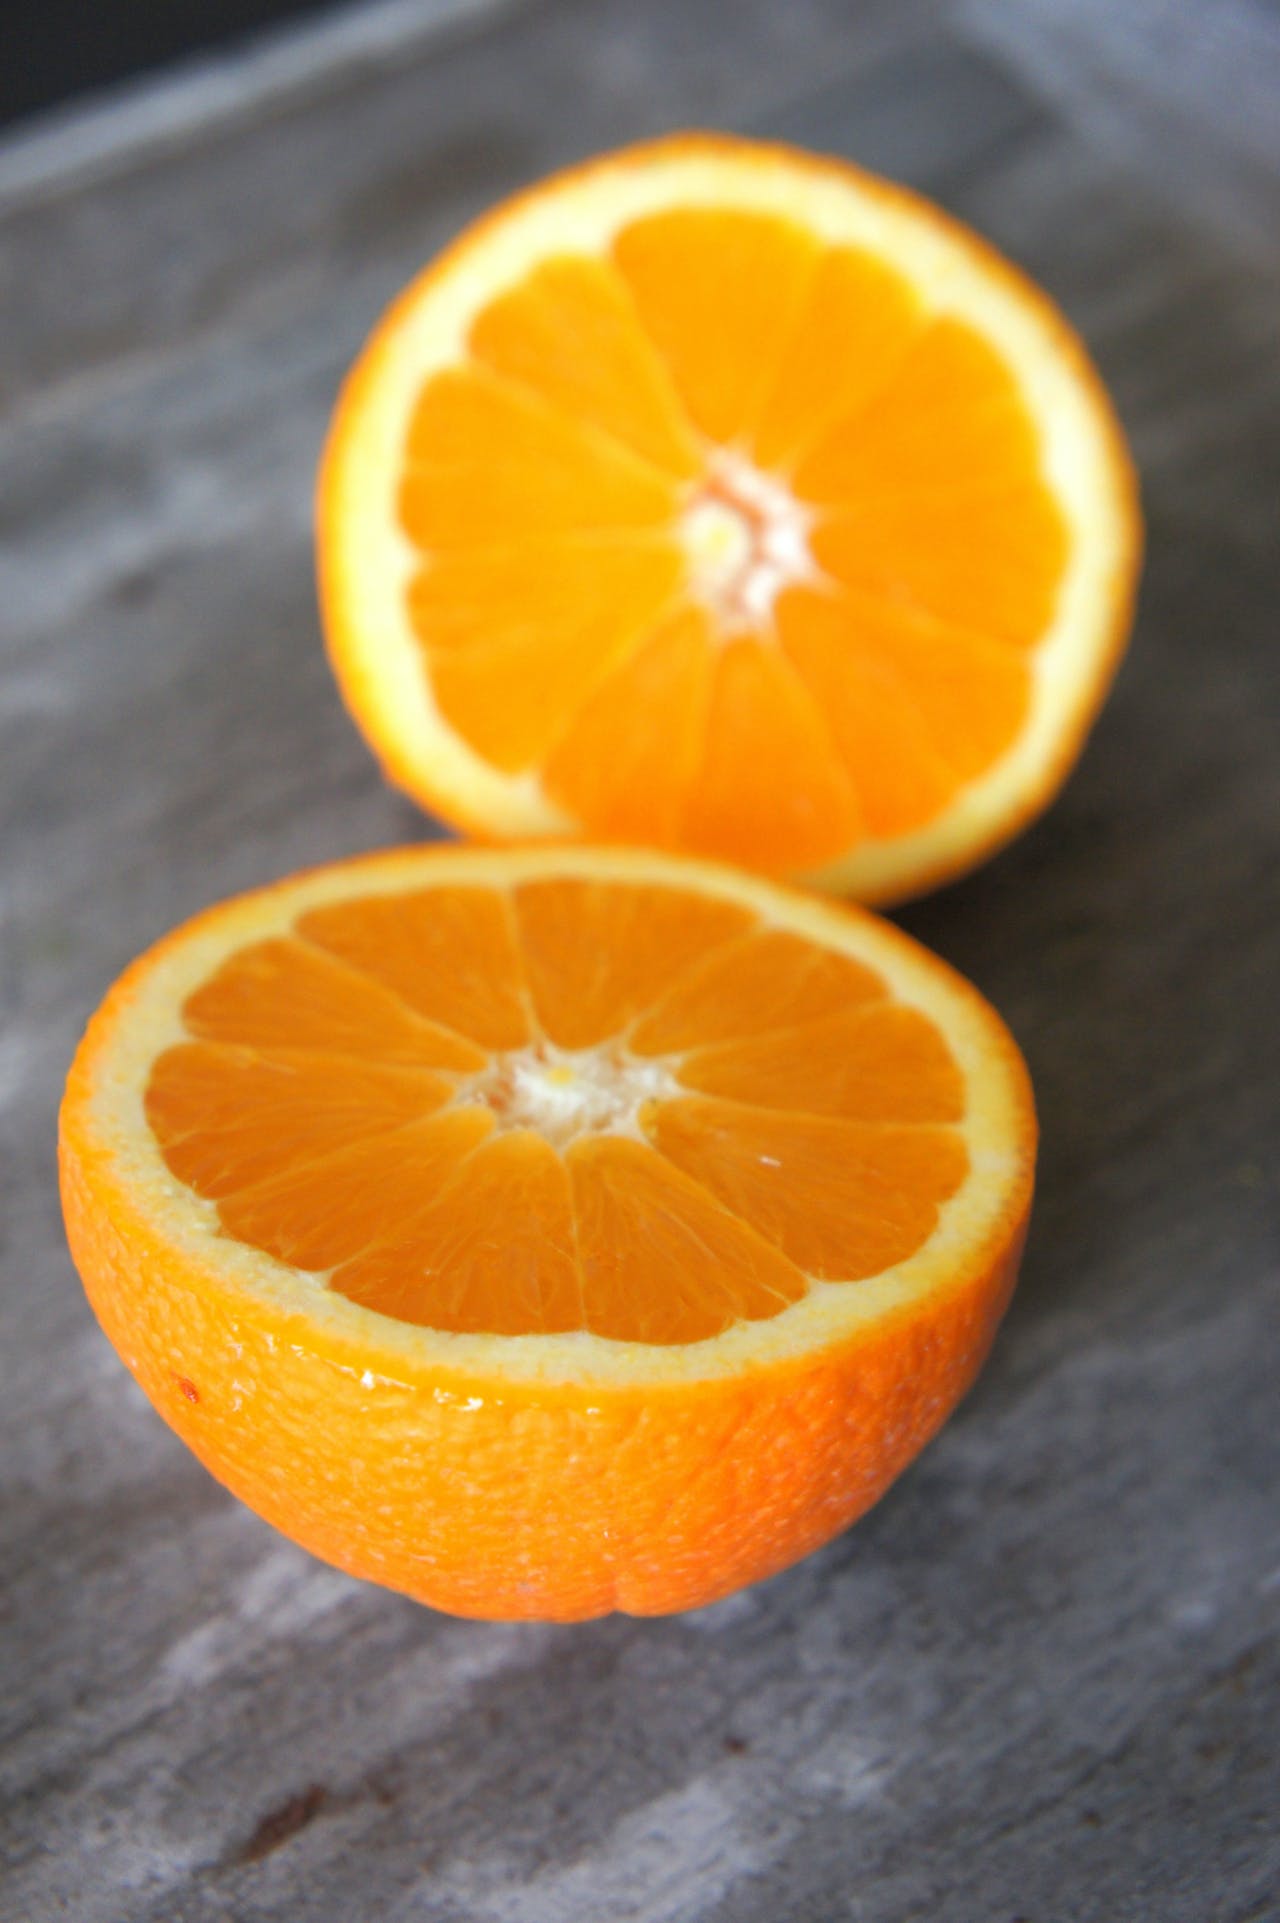 Una naranja partida en dos encima de una encimera gris